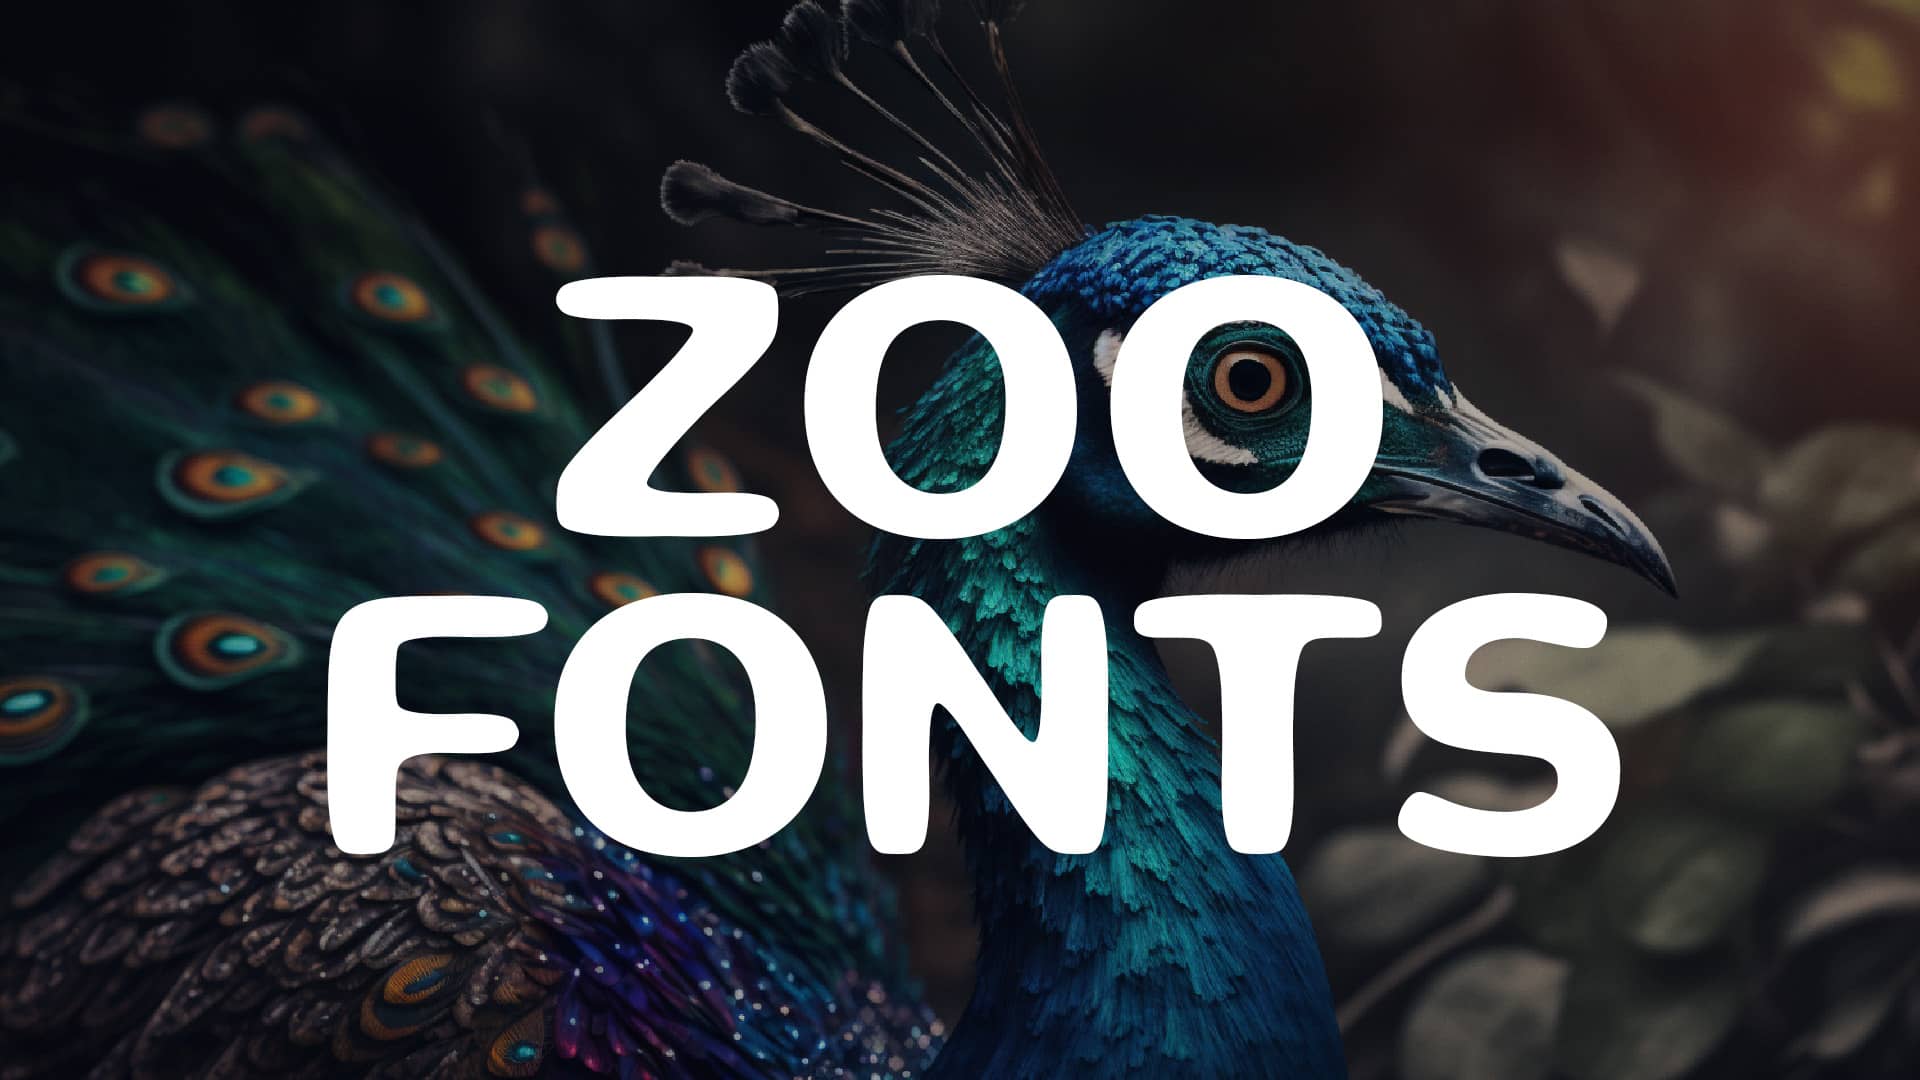 Zoo Fonts